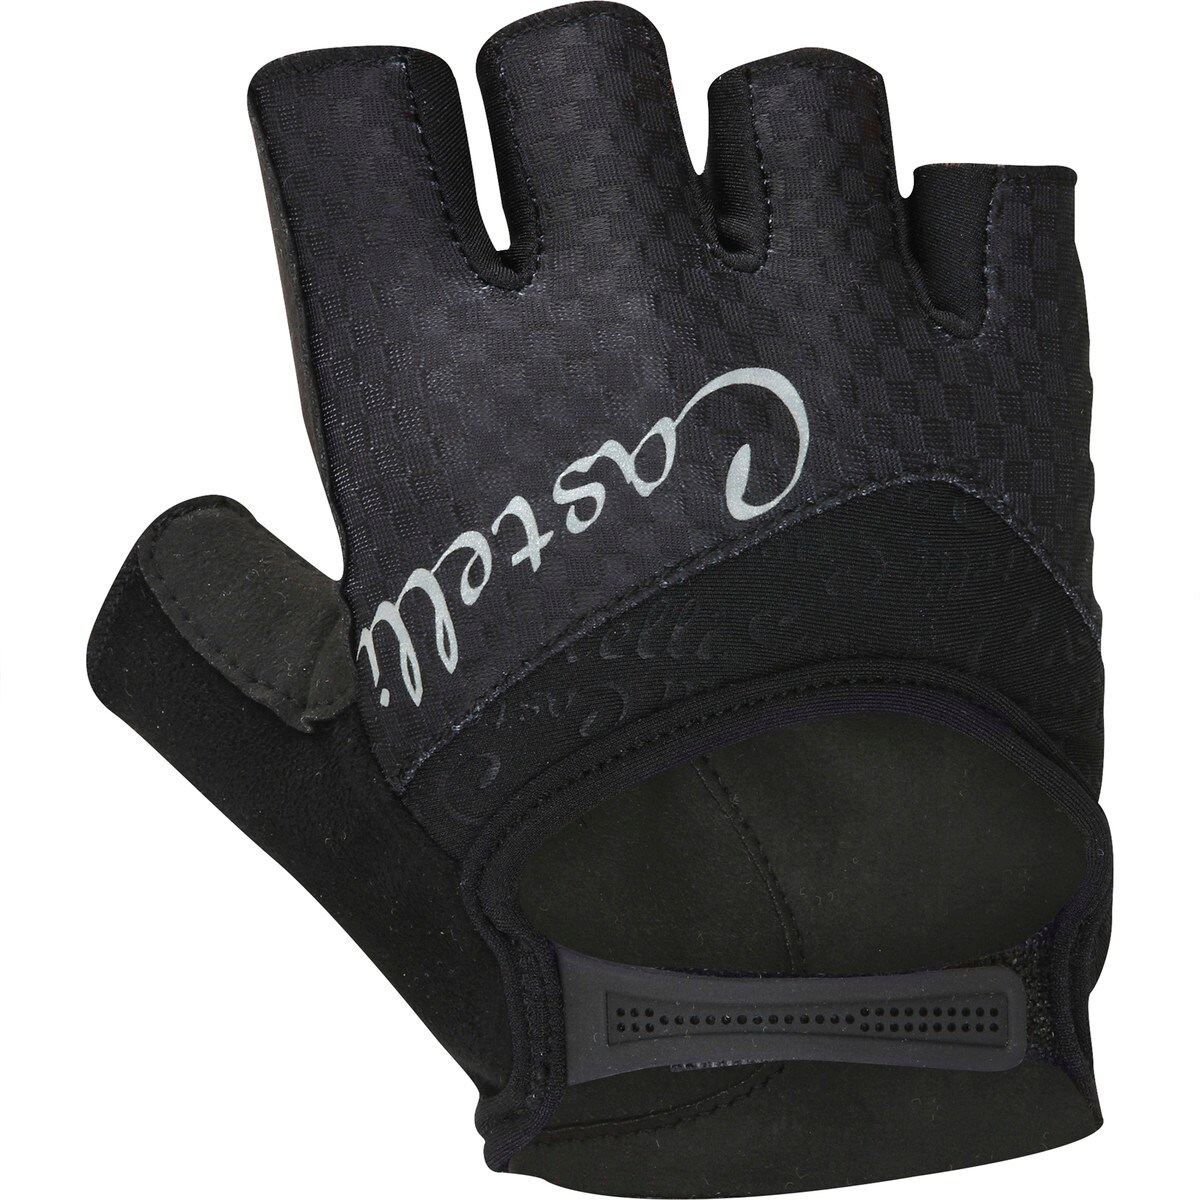 Castelli Arenberg Gel Glove Women's